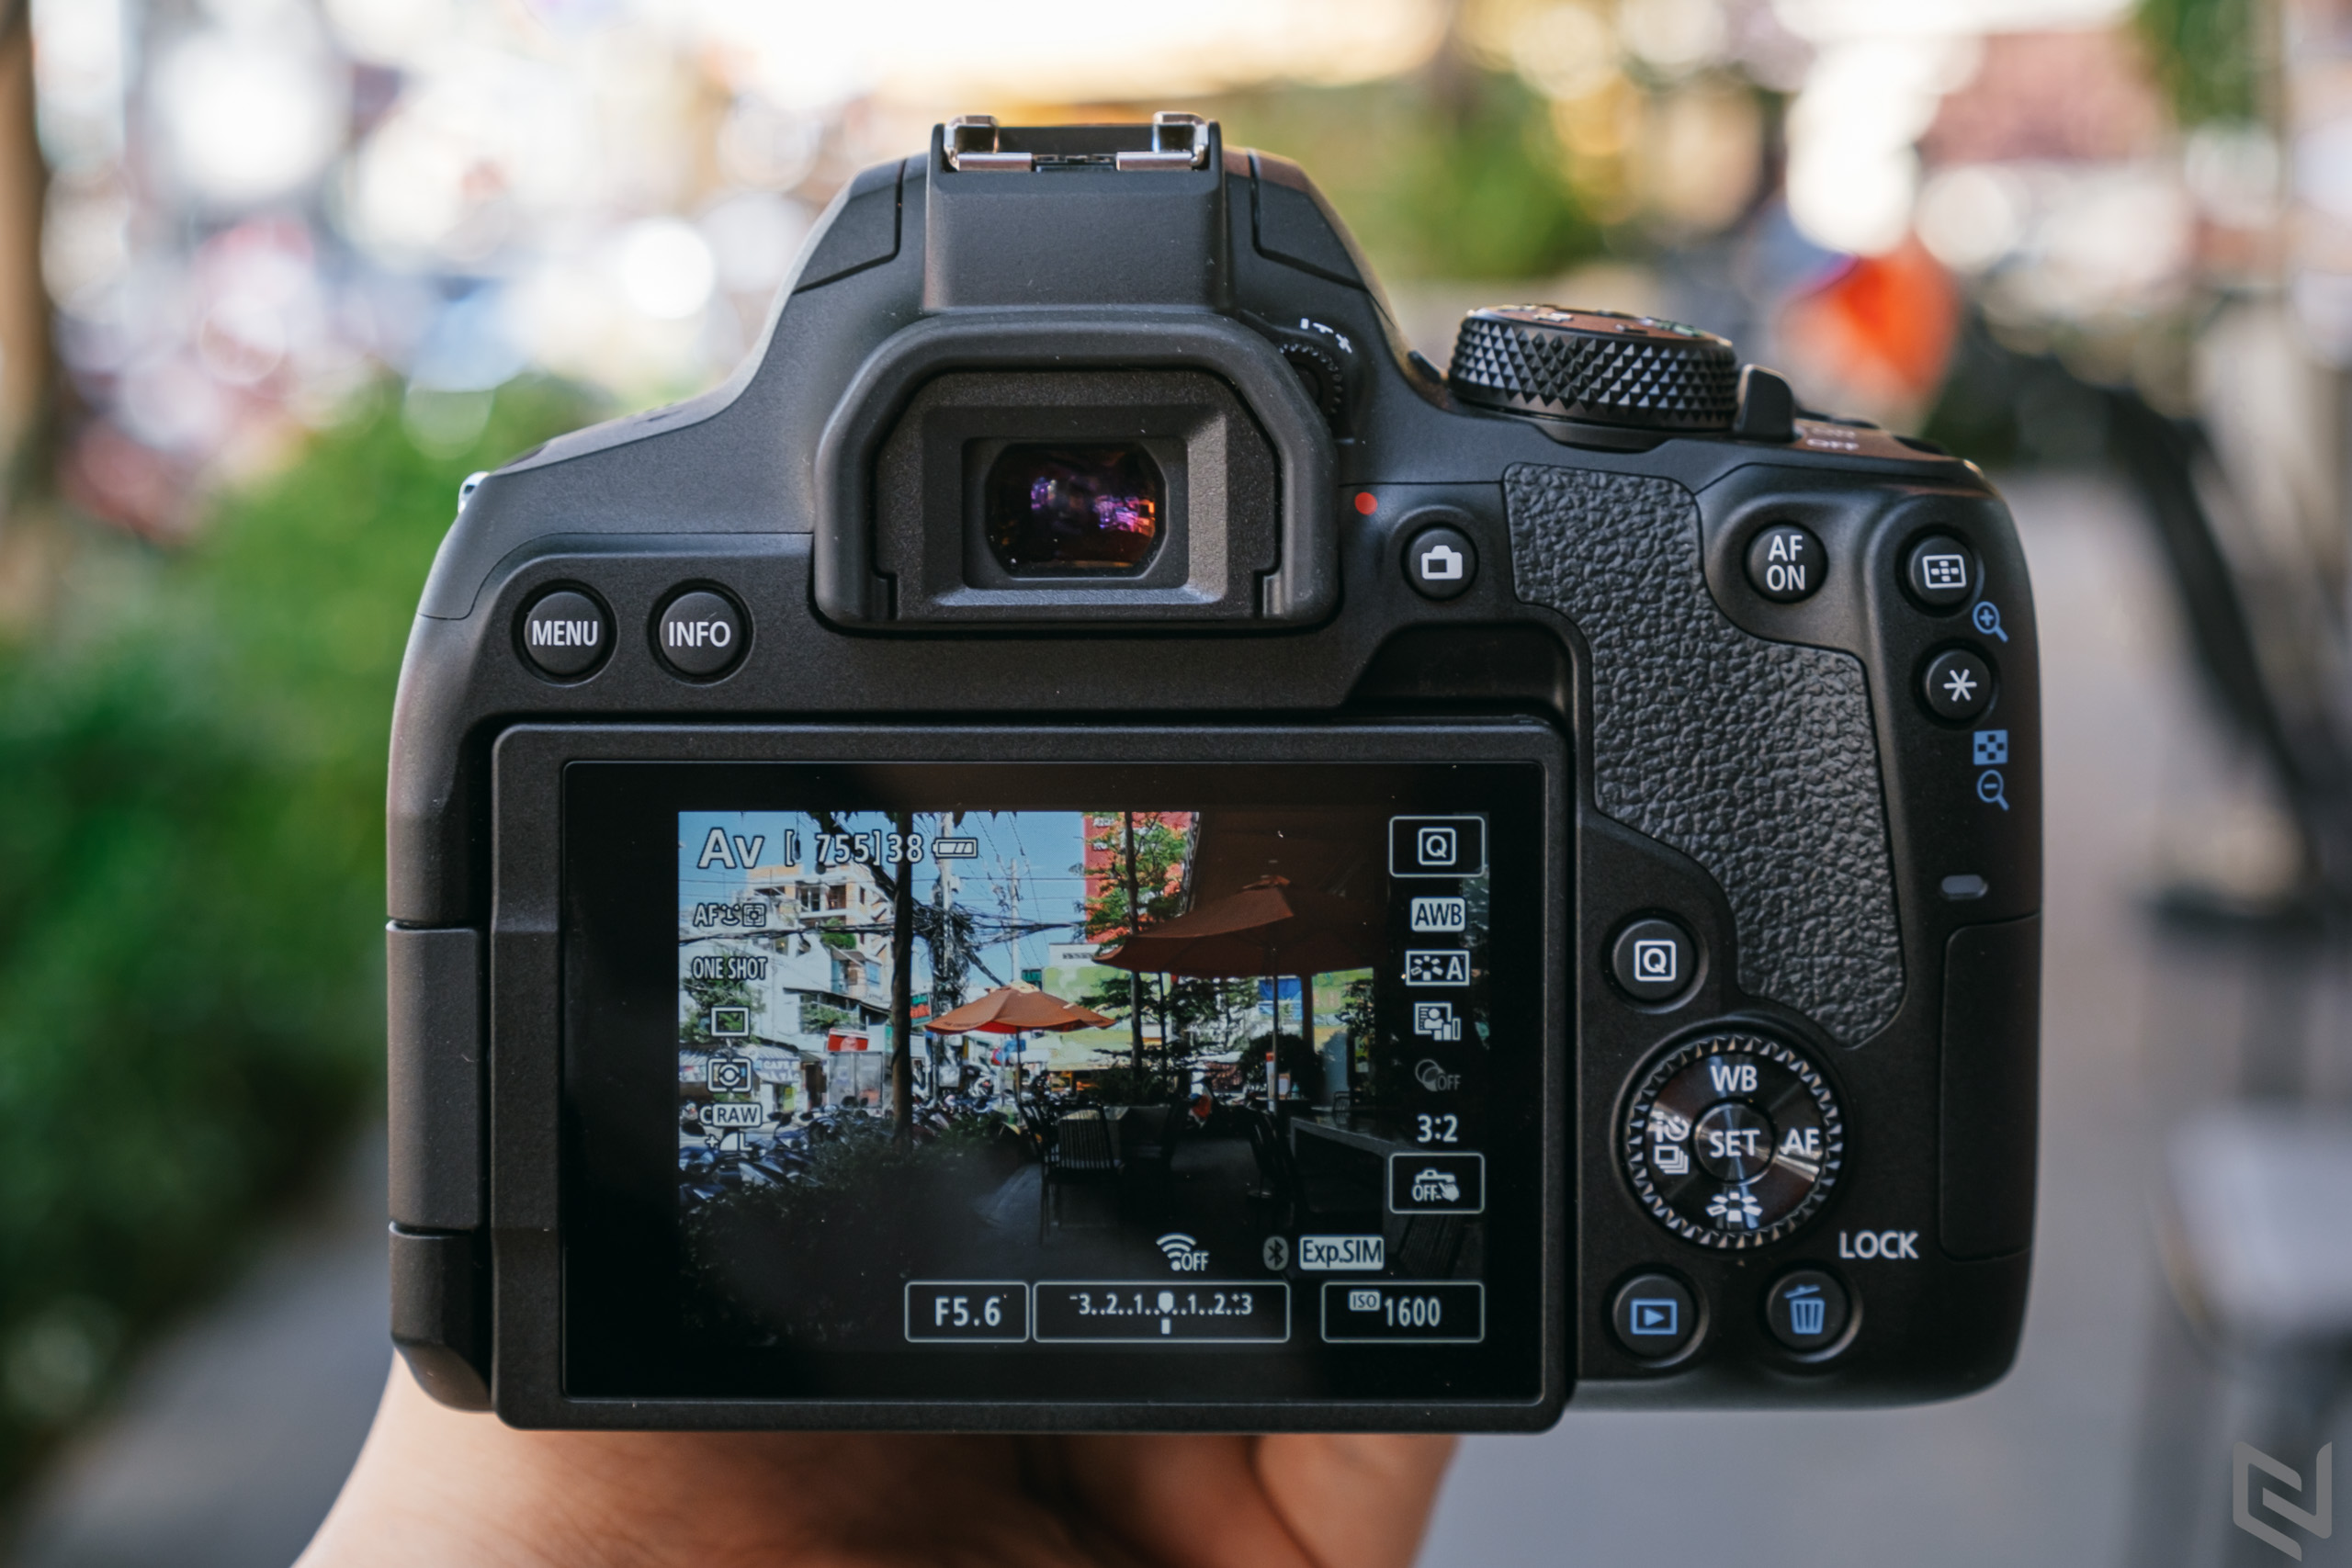 Trên tay Canon EOS 850D, chiếc DSLR hiếm hoi hiện tại dành cho người dùng nhập môn với nhiều tính năng cao cấp từ dòng EOS R